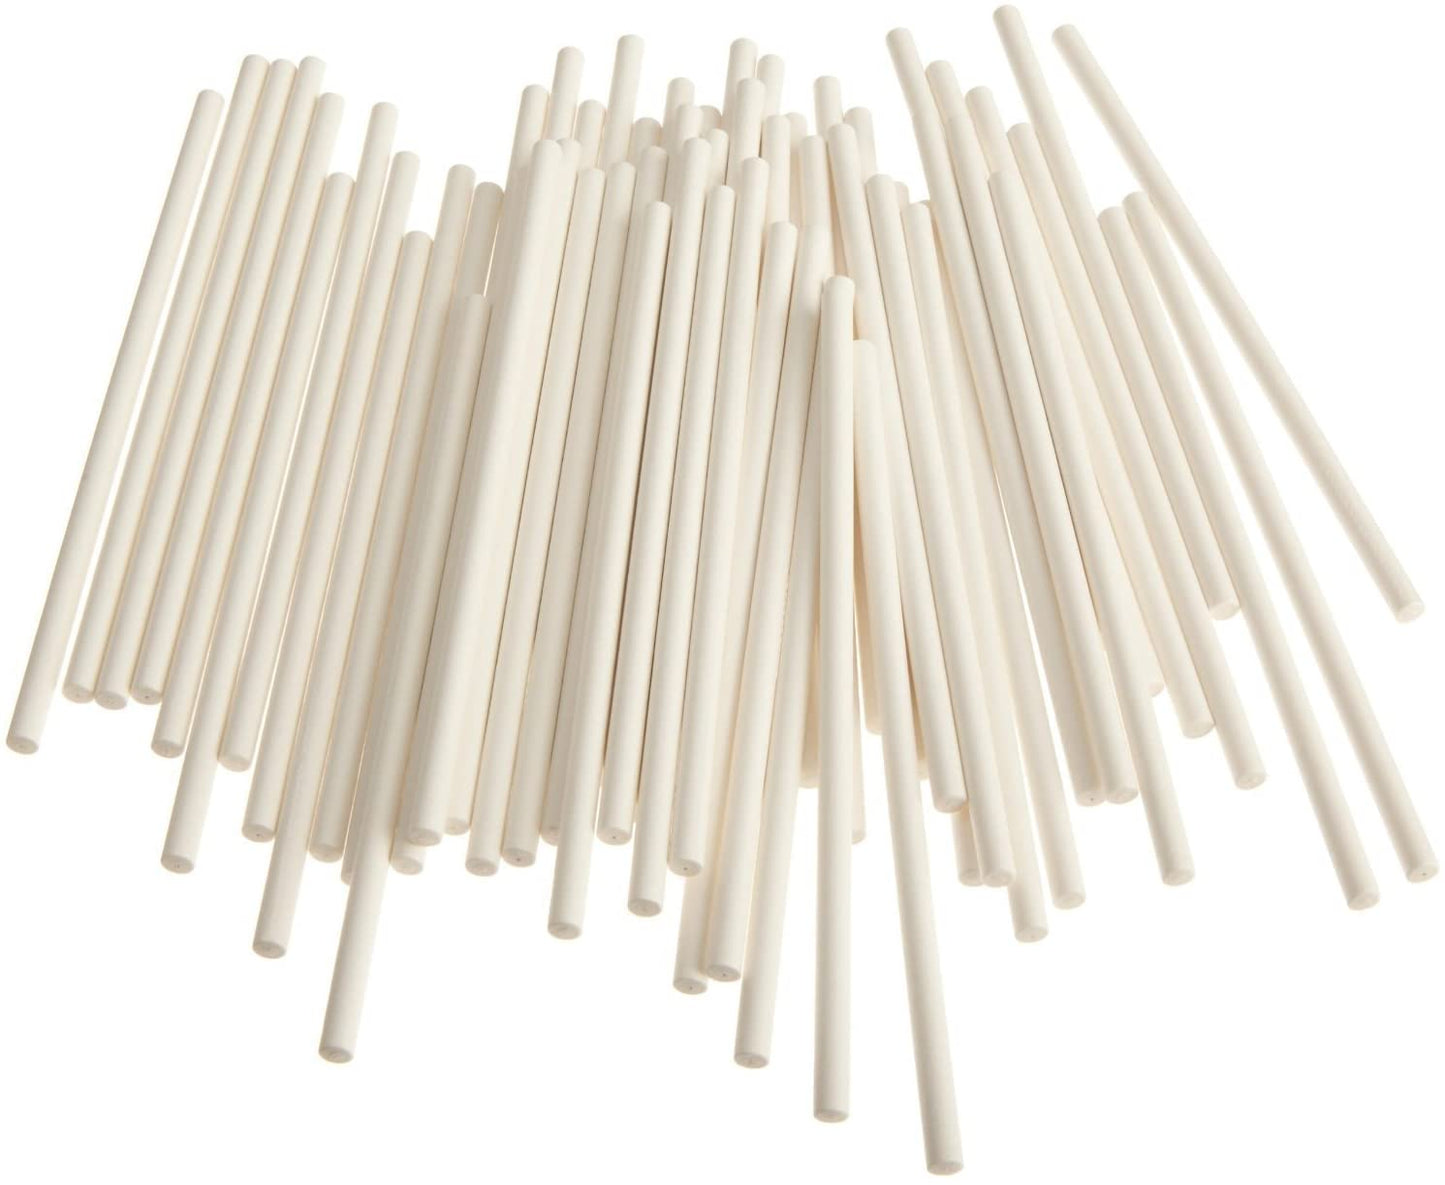 Lollipop Sticks, 4.5", 500 Pack